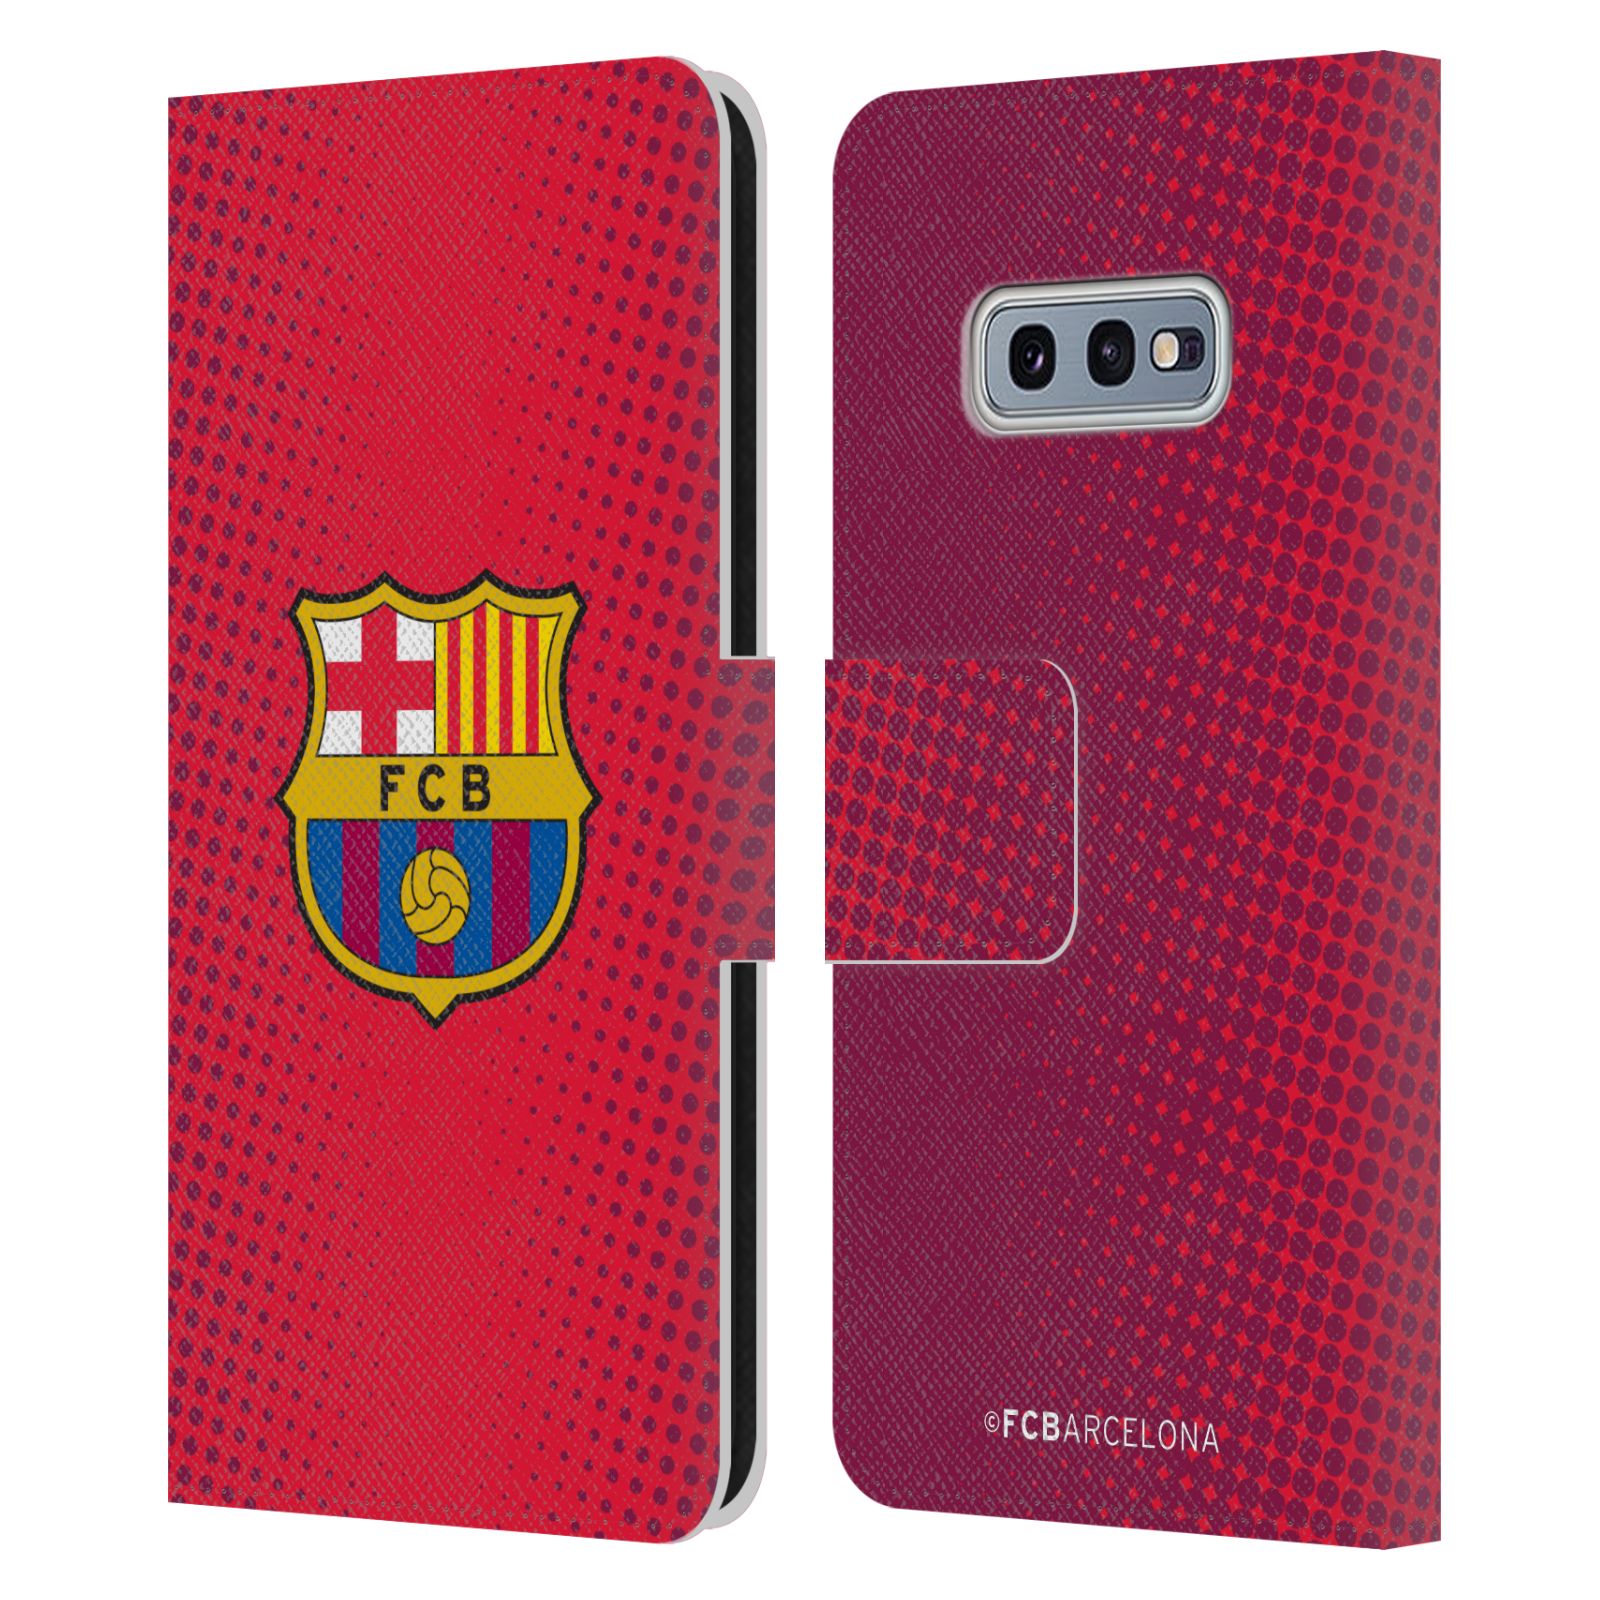 Pouzdro na mobil Samsung Galaxy S10e  - HEAD CASE - FC Barcelona - Tečky červená